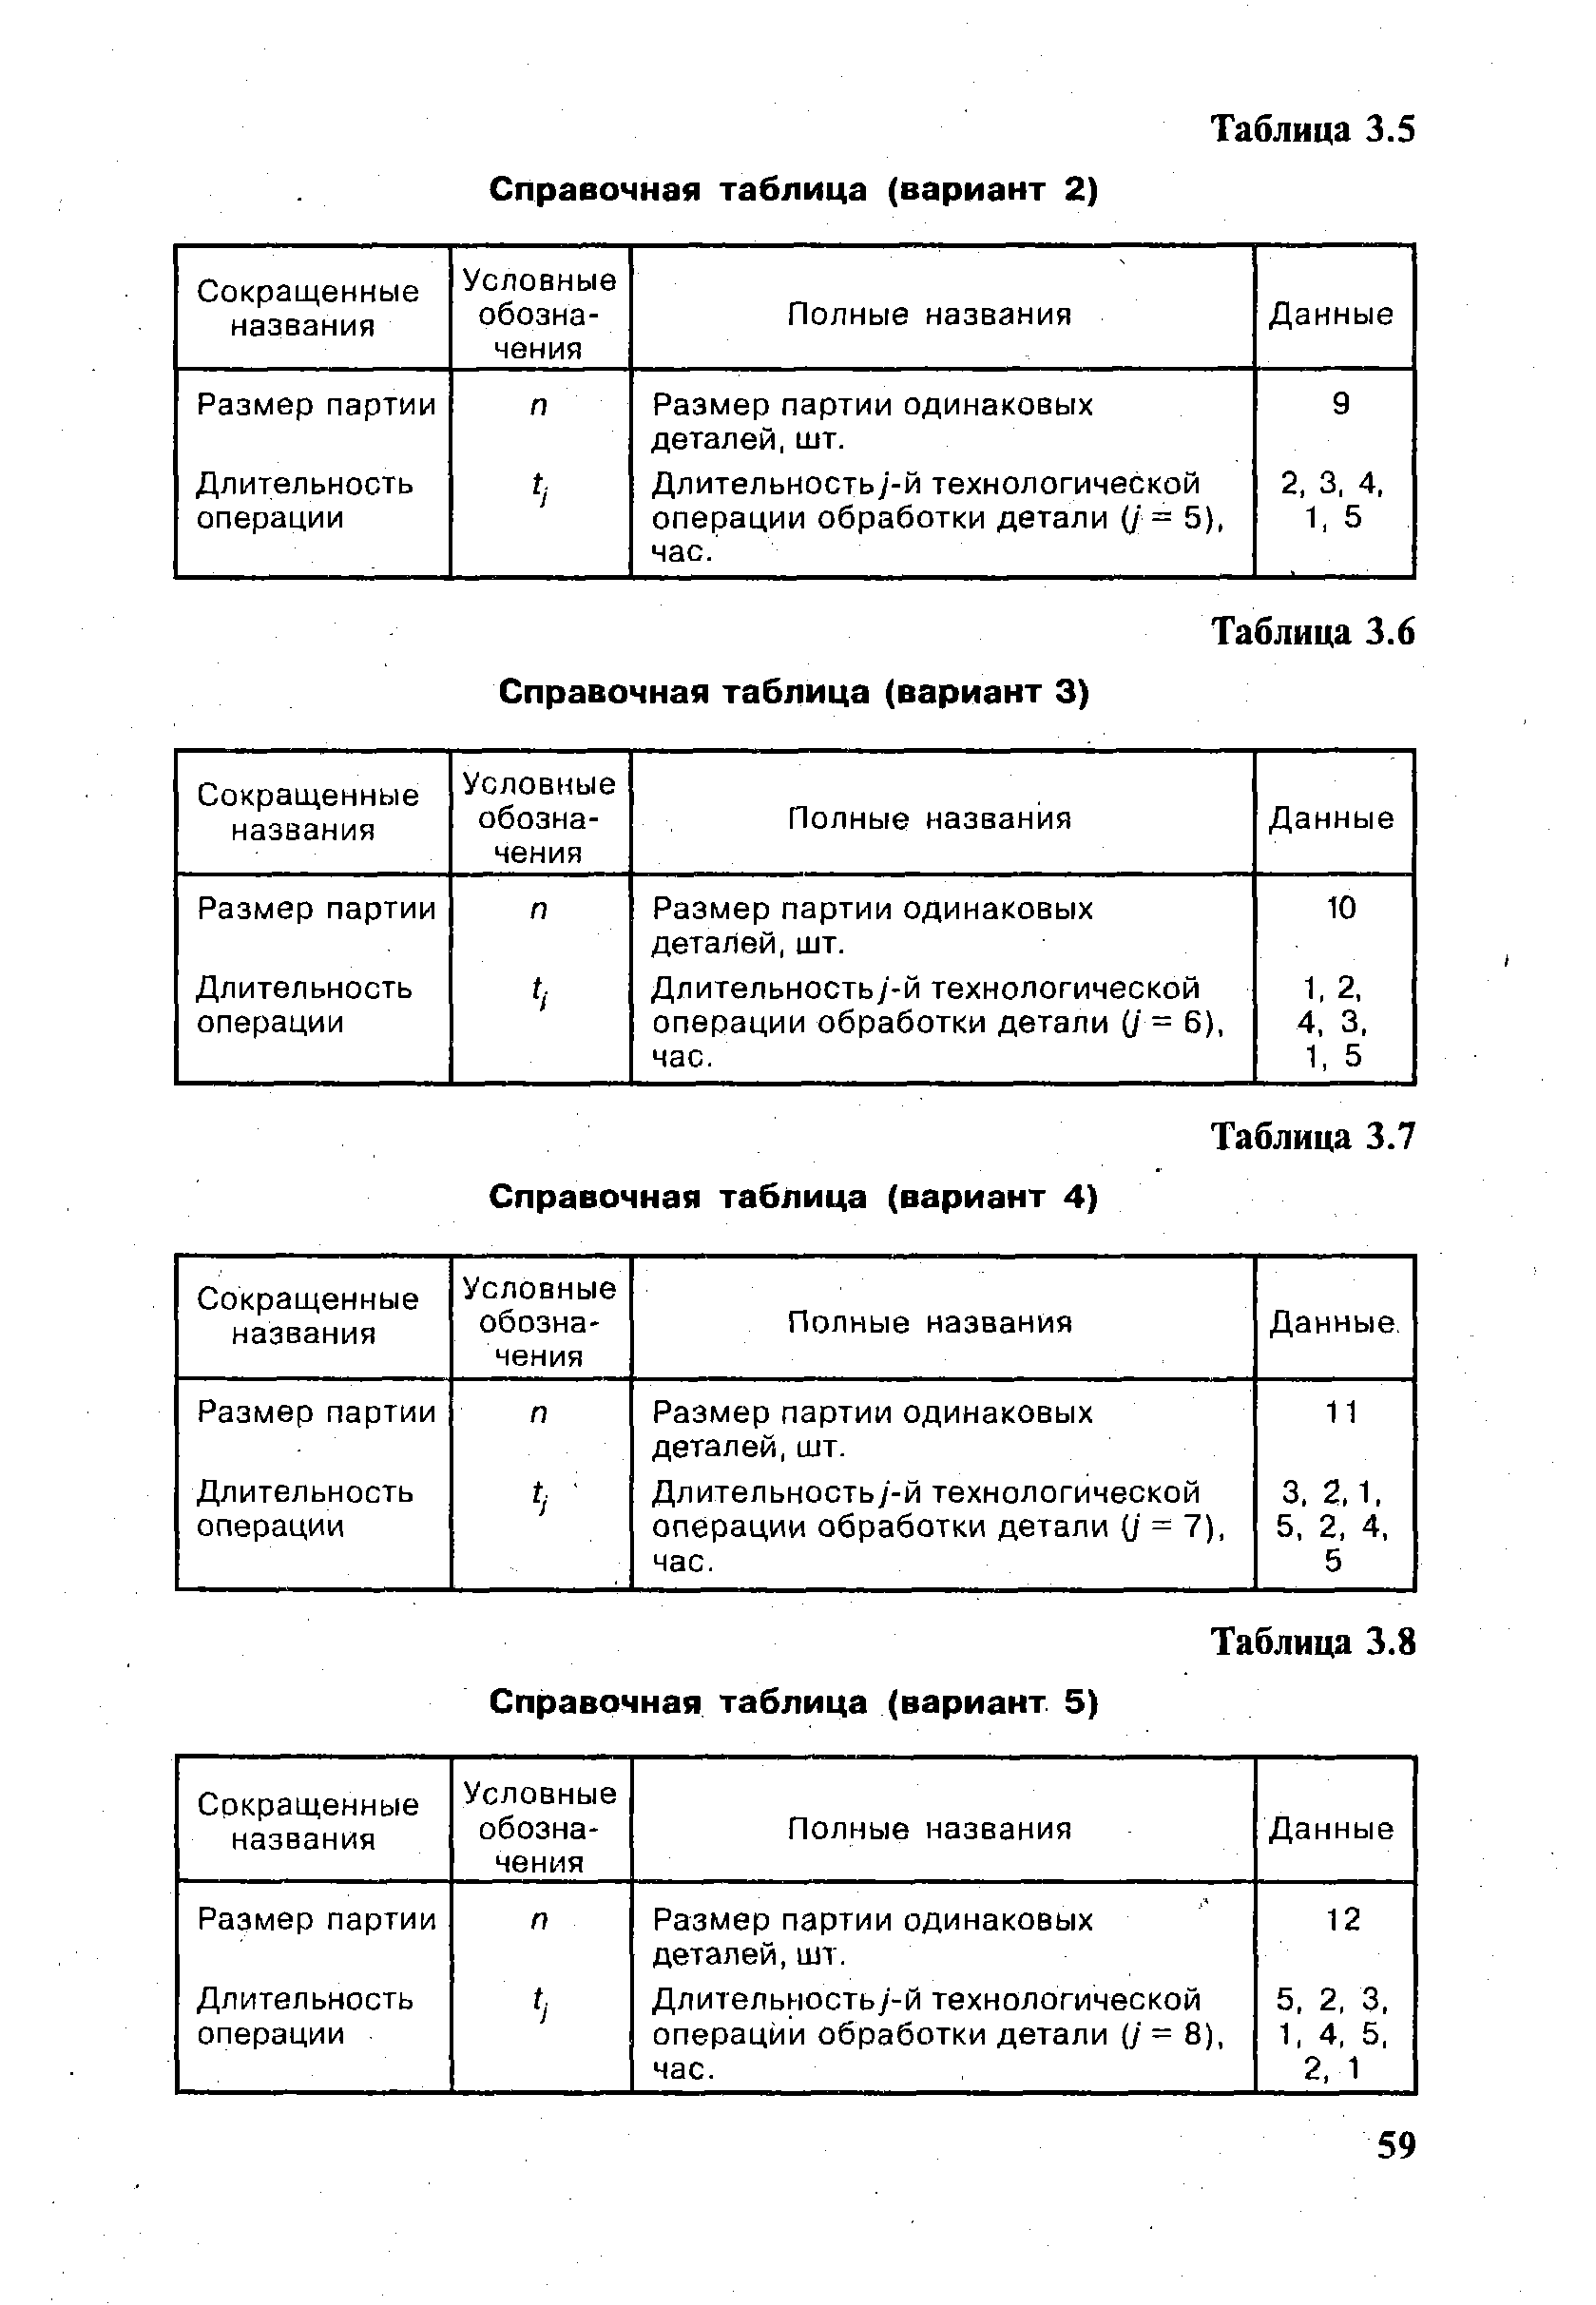 Таблица 3.8 Справочная таблица (вариант 5)
